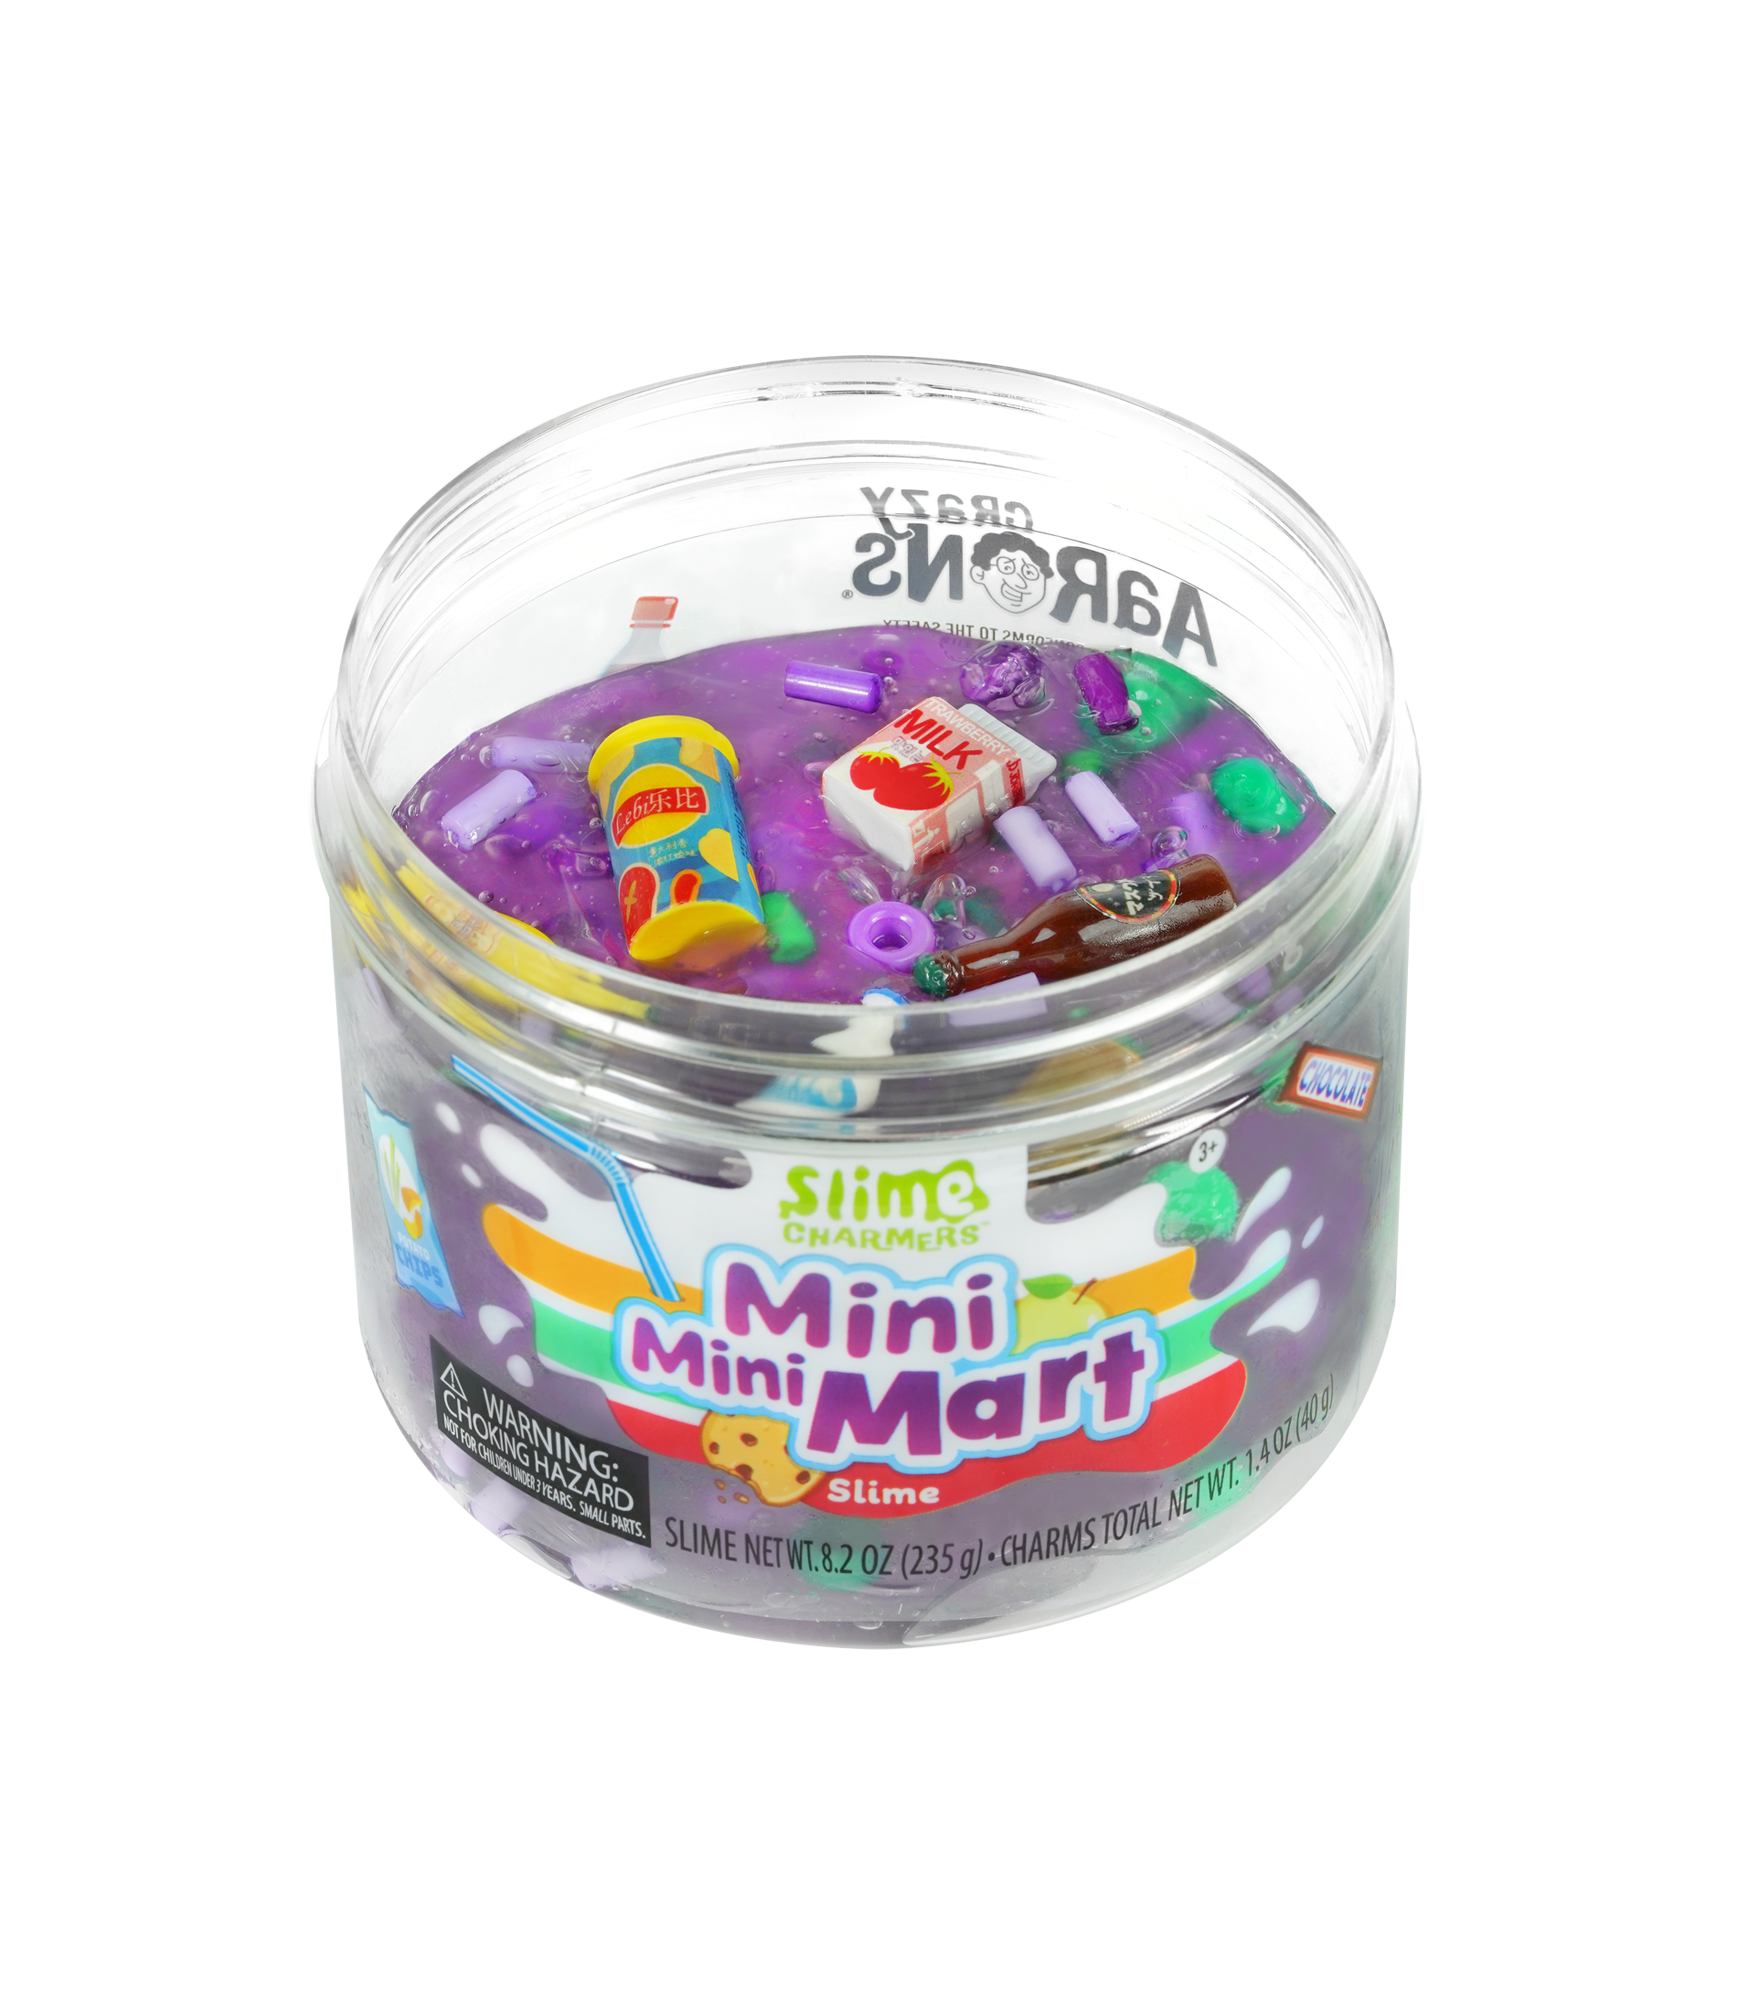 Mini Mini Mart Slime Charmers